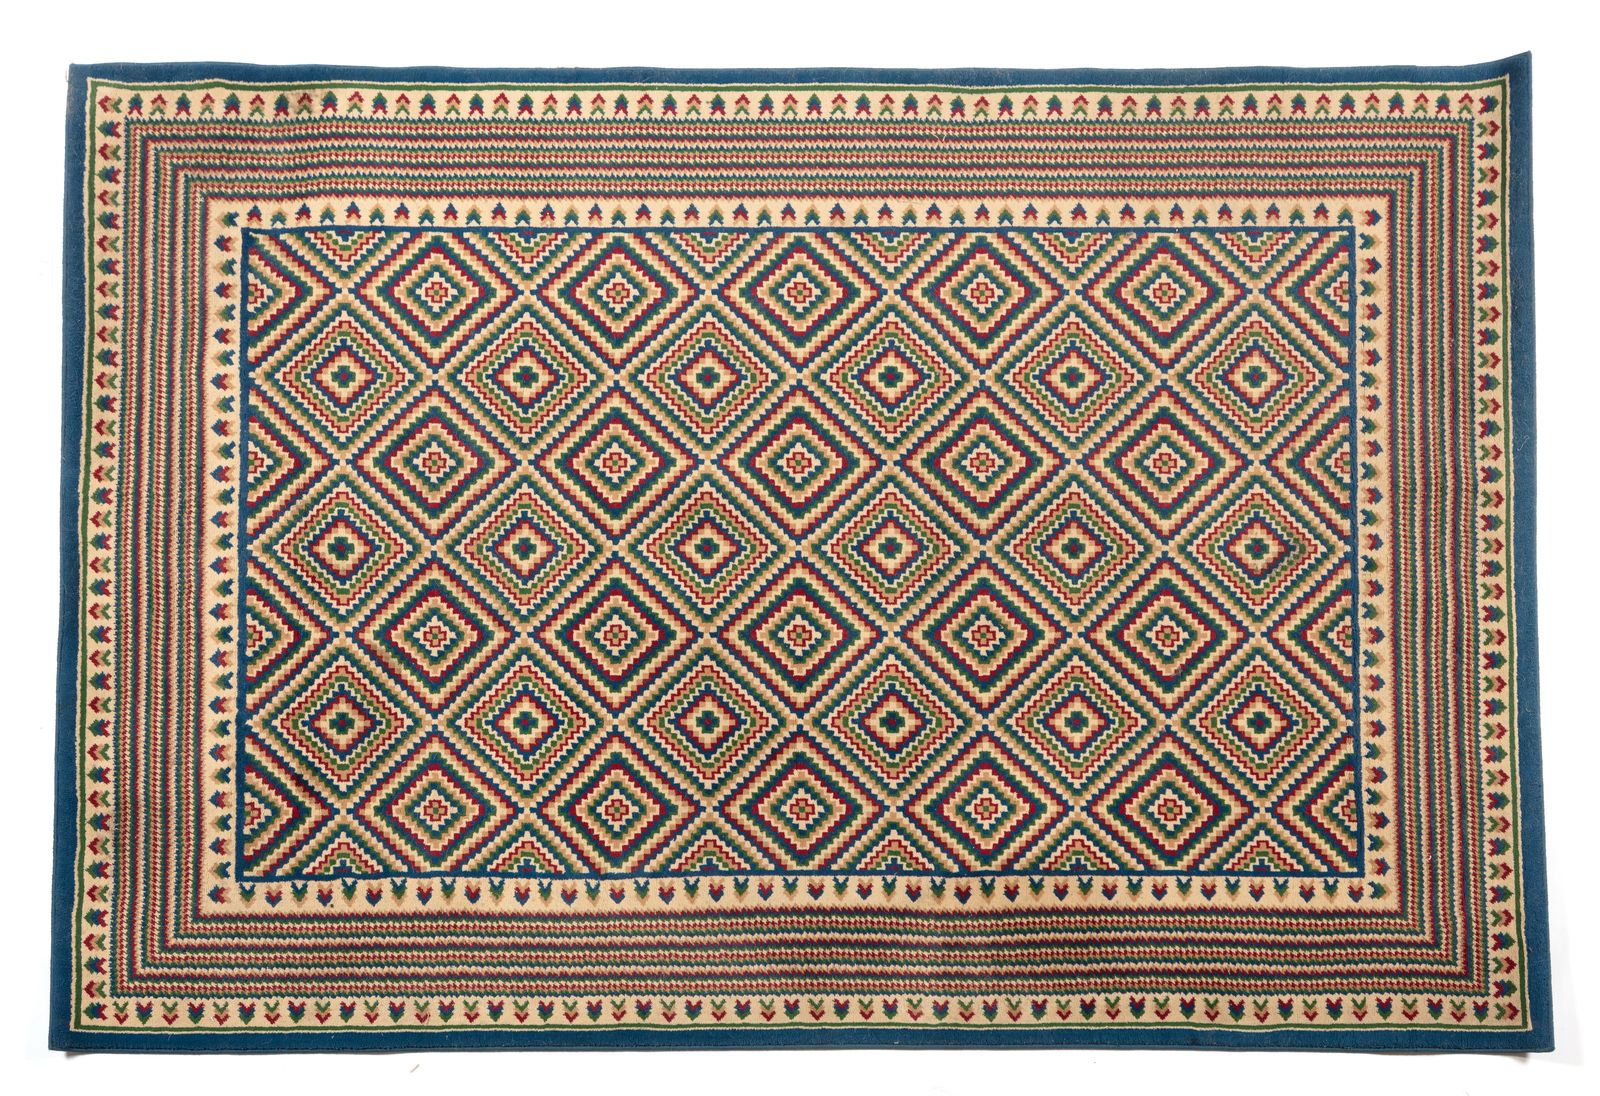 MISSONI MISSONI. Teppich. Herstellungsetikett, 1970er Jahre. Cm 161,00 x 236,00.